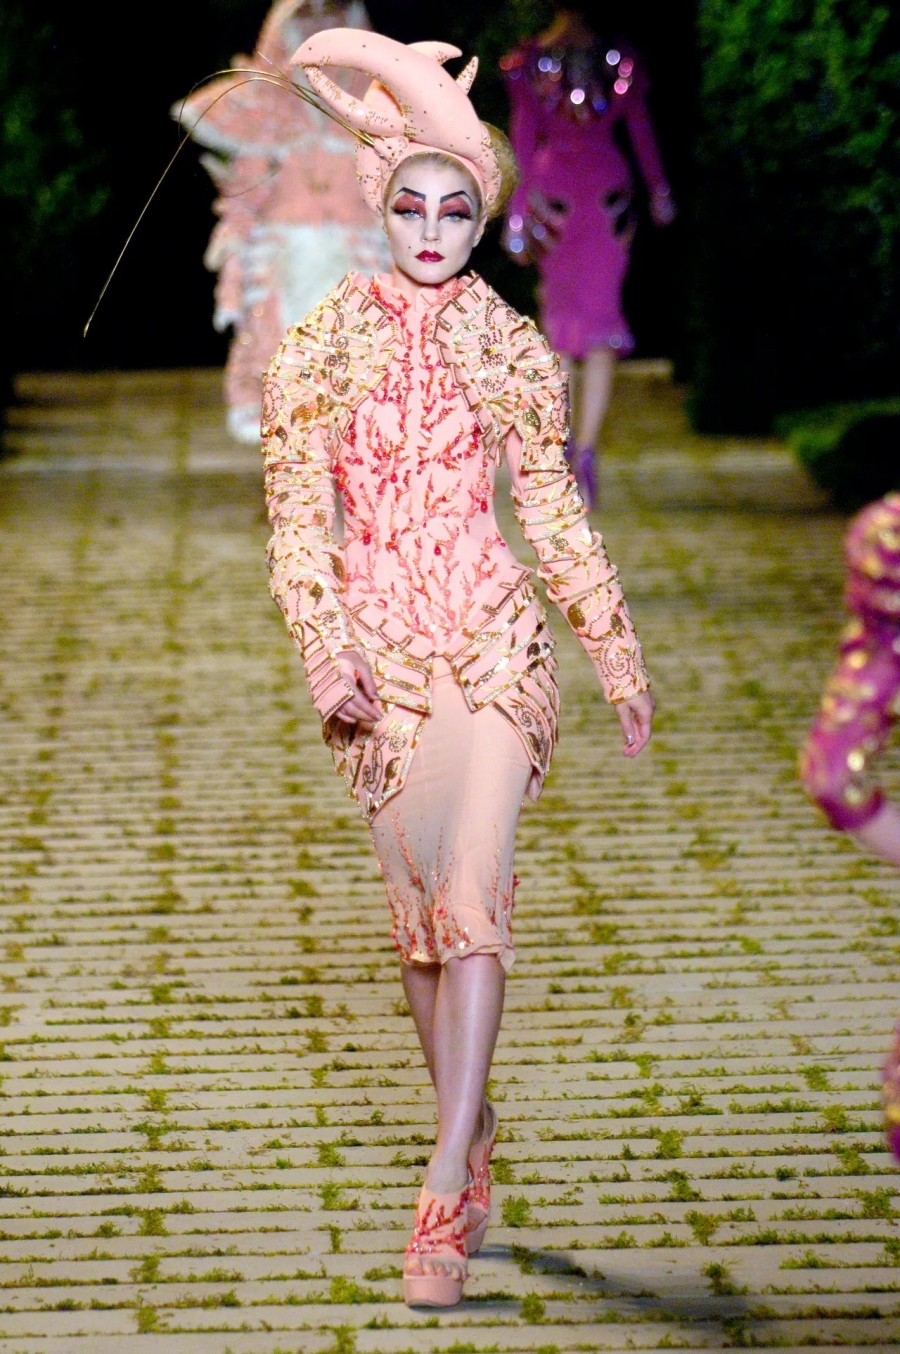 Năm 2006, Dior mang thiết kế tôm hùm đầu tiên của mình lên sàn diễn. Một chiếc váy màu hồng nude tựa như lớp da mới vừa được lột của tôm hùm, người mẫu đeo một chiếc mũ to tướng được mô phỏng theo càng tôm.